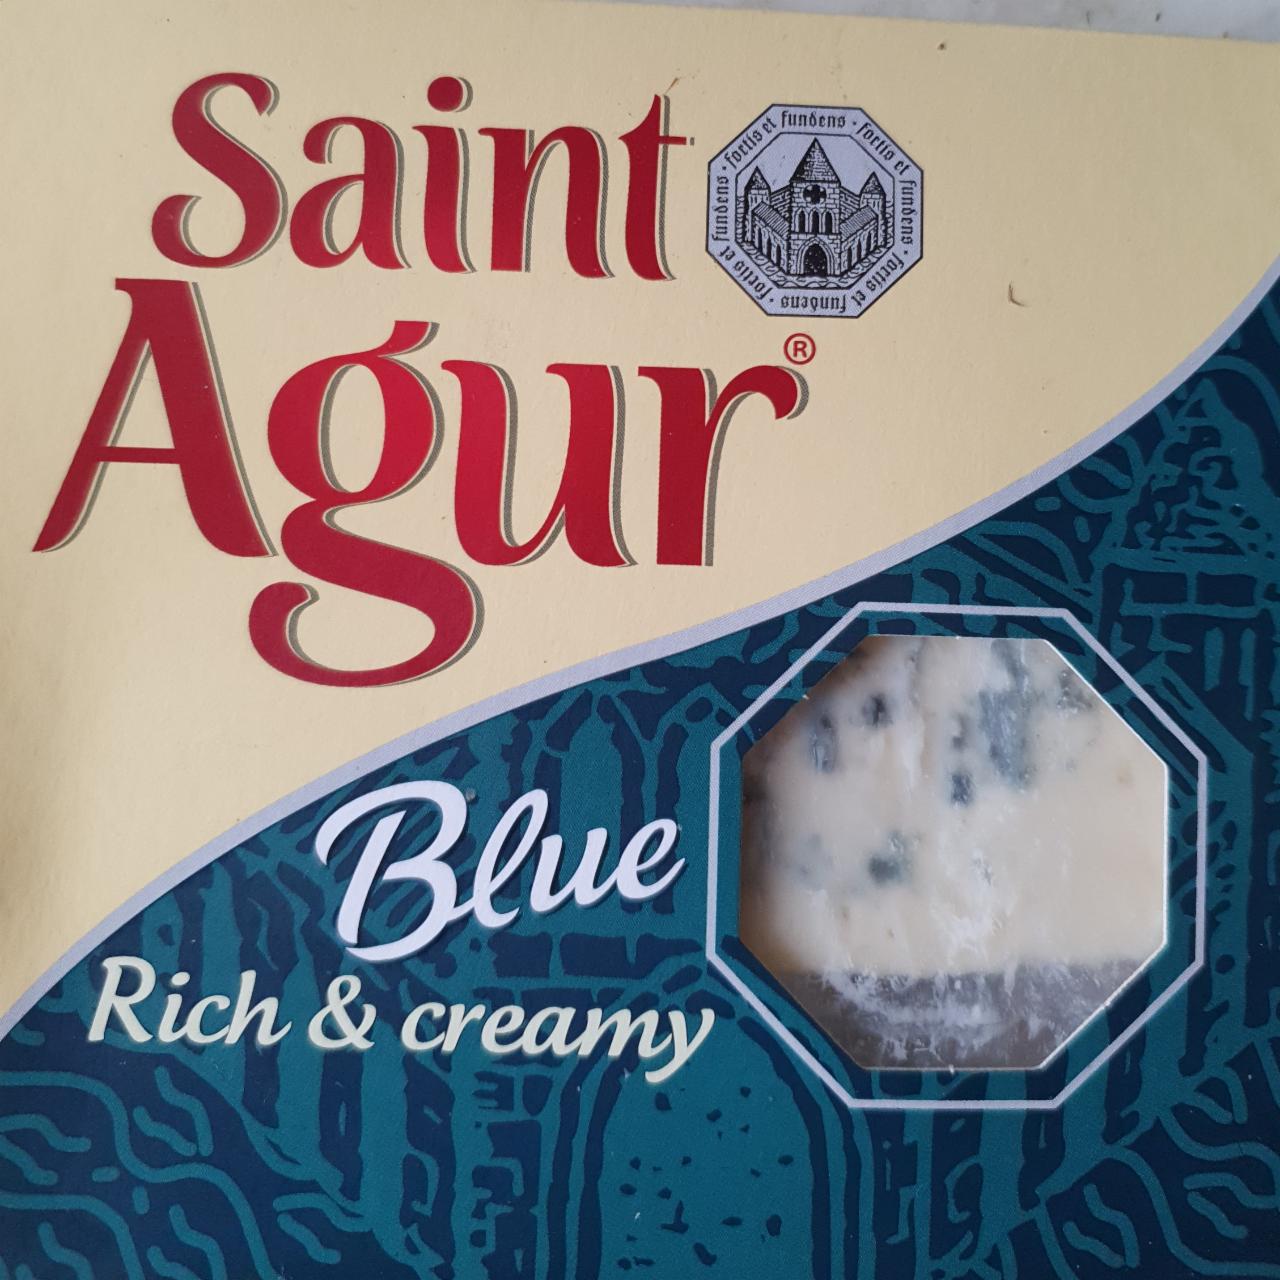 Fotografie - Blue rich & creamy cheese Saint Agur